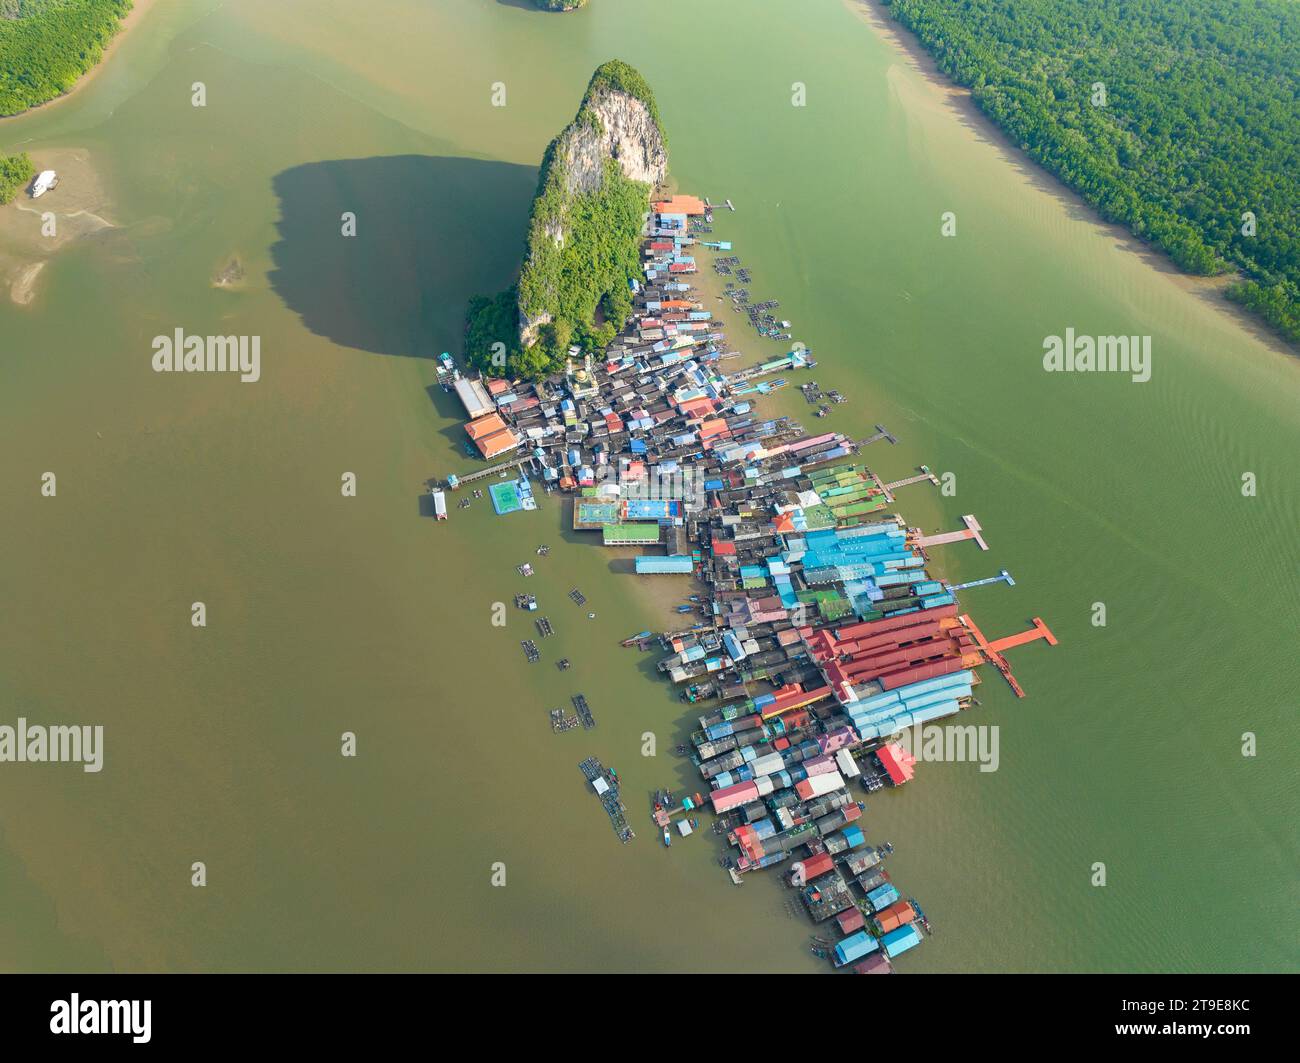 Vue aérienne de l'île de Panyee à Phang Nga Thaïlande, vue à grand angle Village flottant, île de village de pêcheurs Koh Panyee à Phang Nga, Thaïlande Banque D'Images